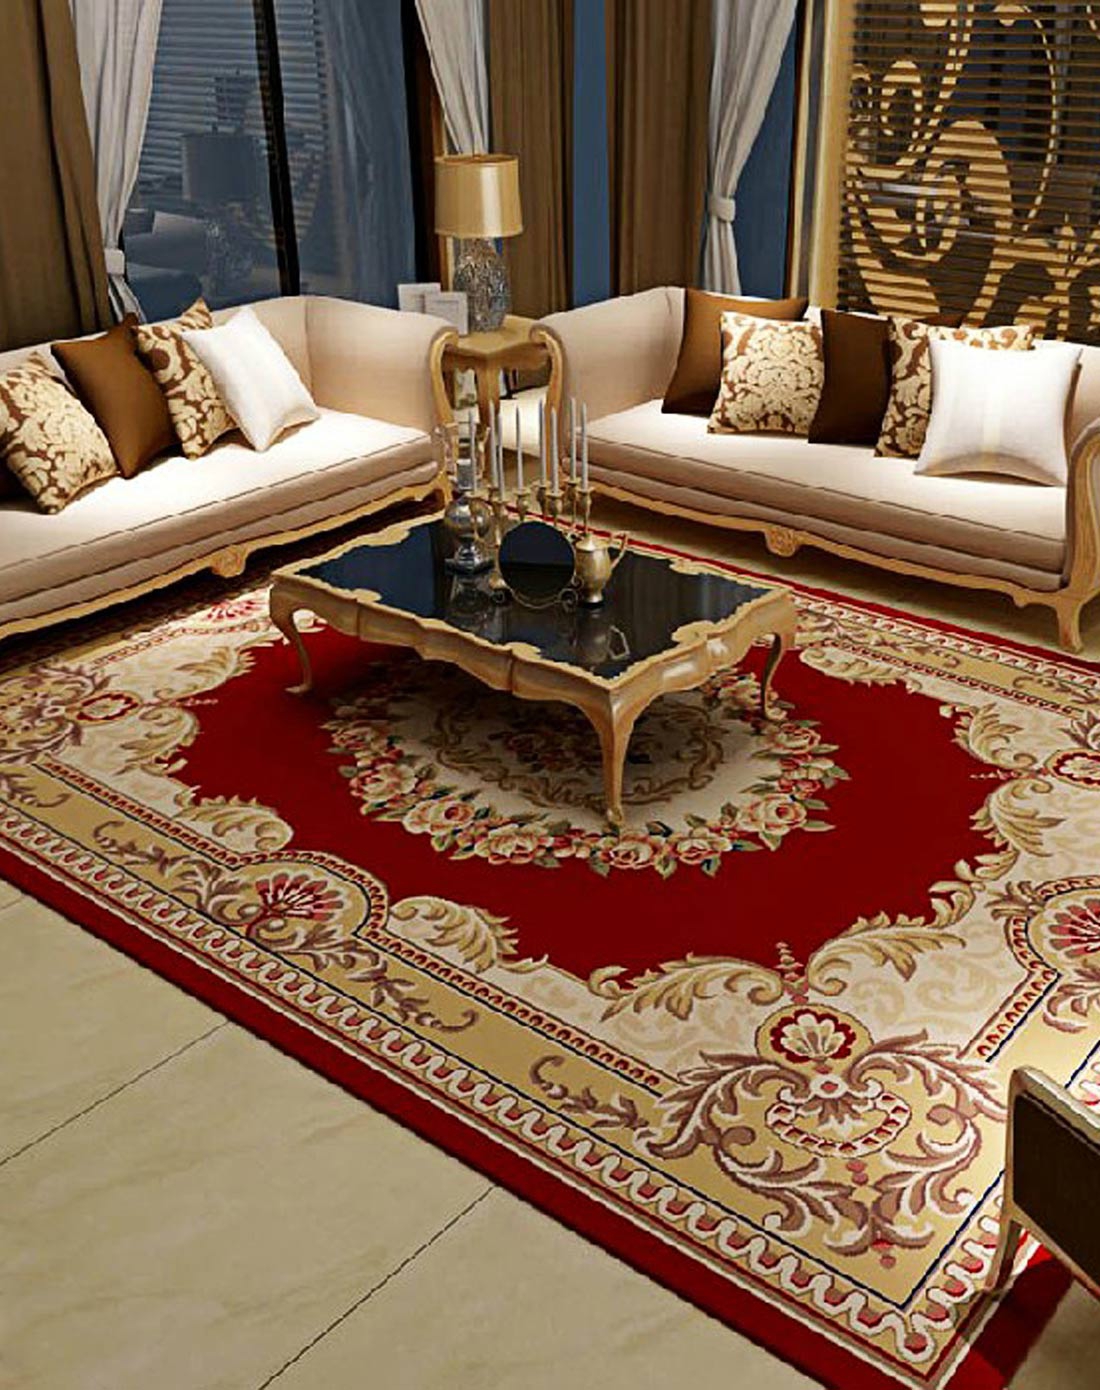 一件代发 北欧现代简约地毯 客厅茶几毯家用卧室床边满铺地毯地垫-阿里巴巴